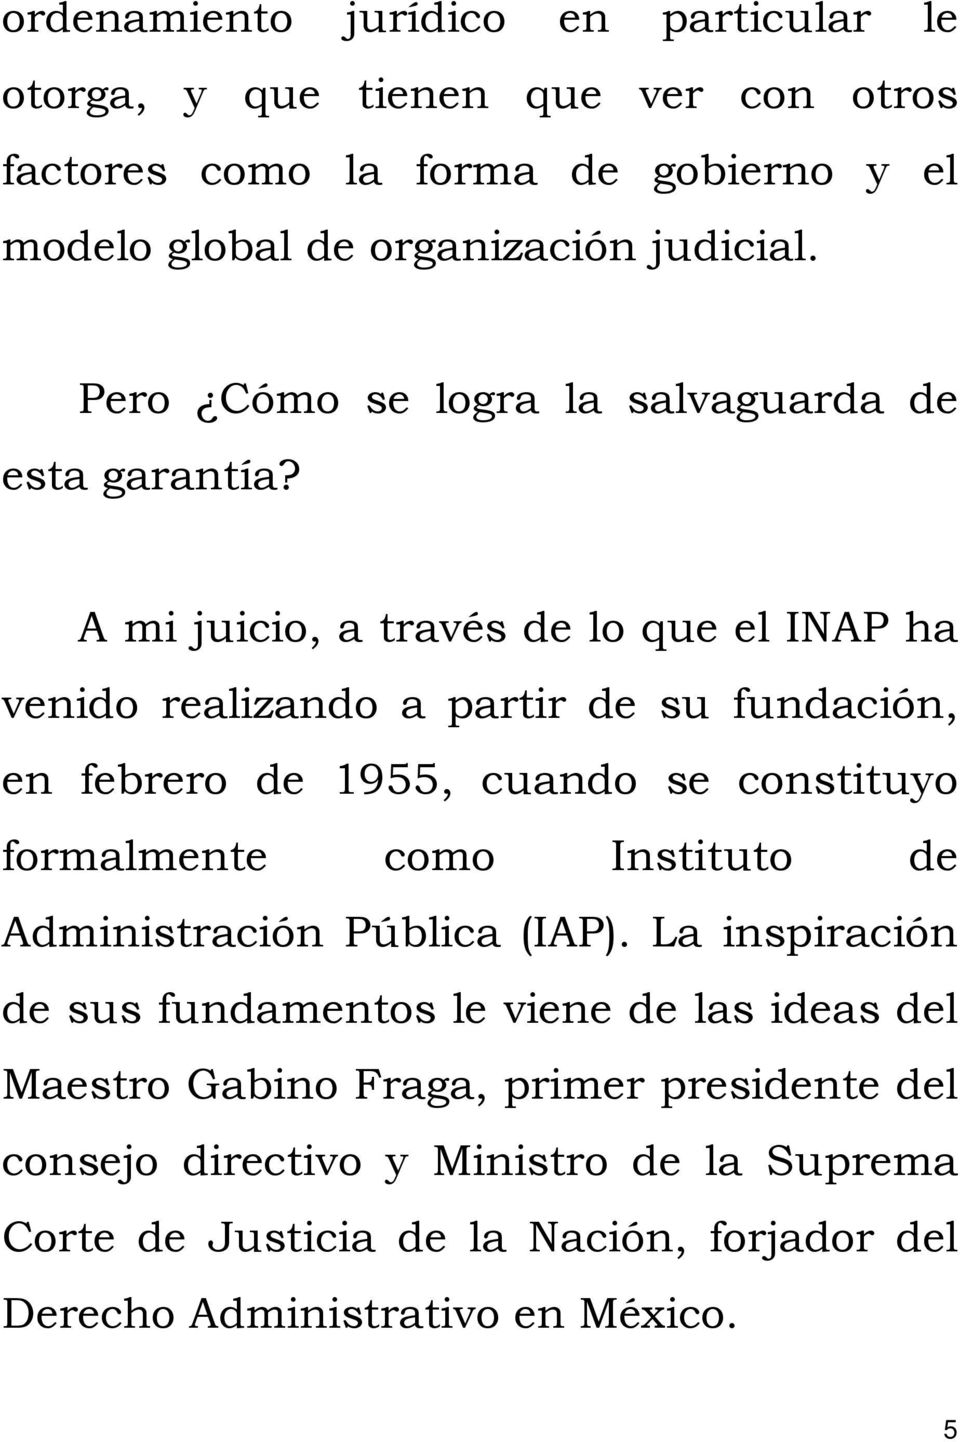 A mi juicio, a través de lo que el INAP ha venido realizando a partir de su fundación, en febrero de 1955, cuando se constituyo formalmente como Instituto